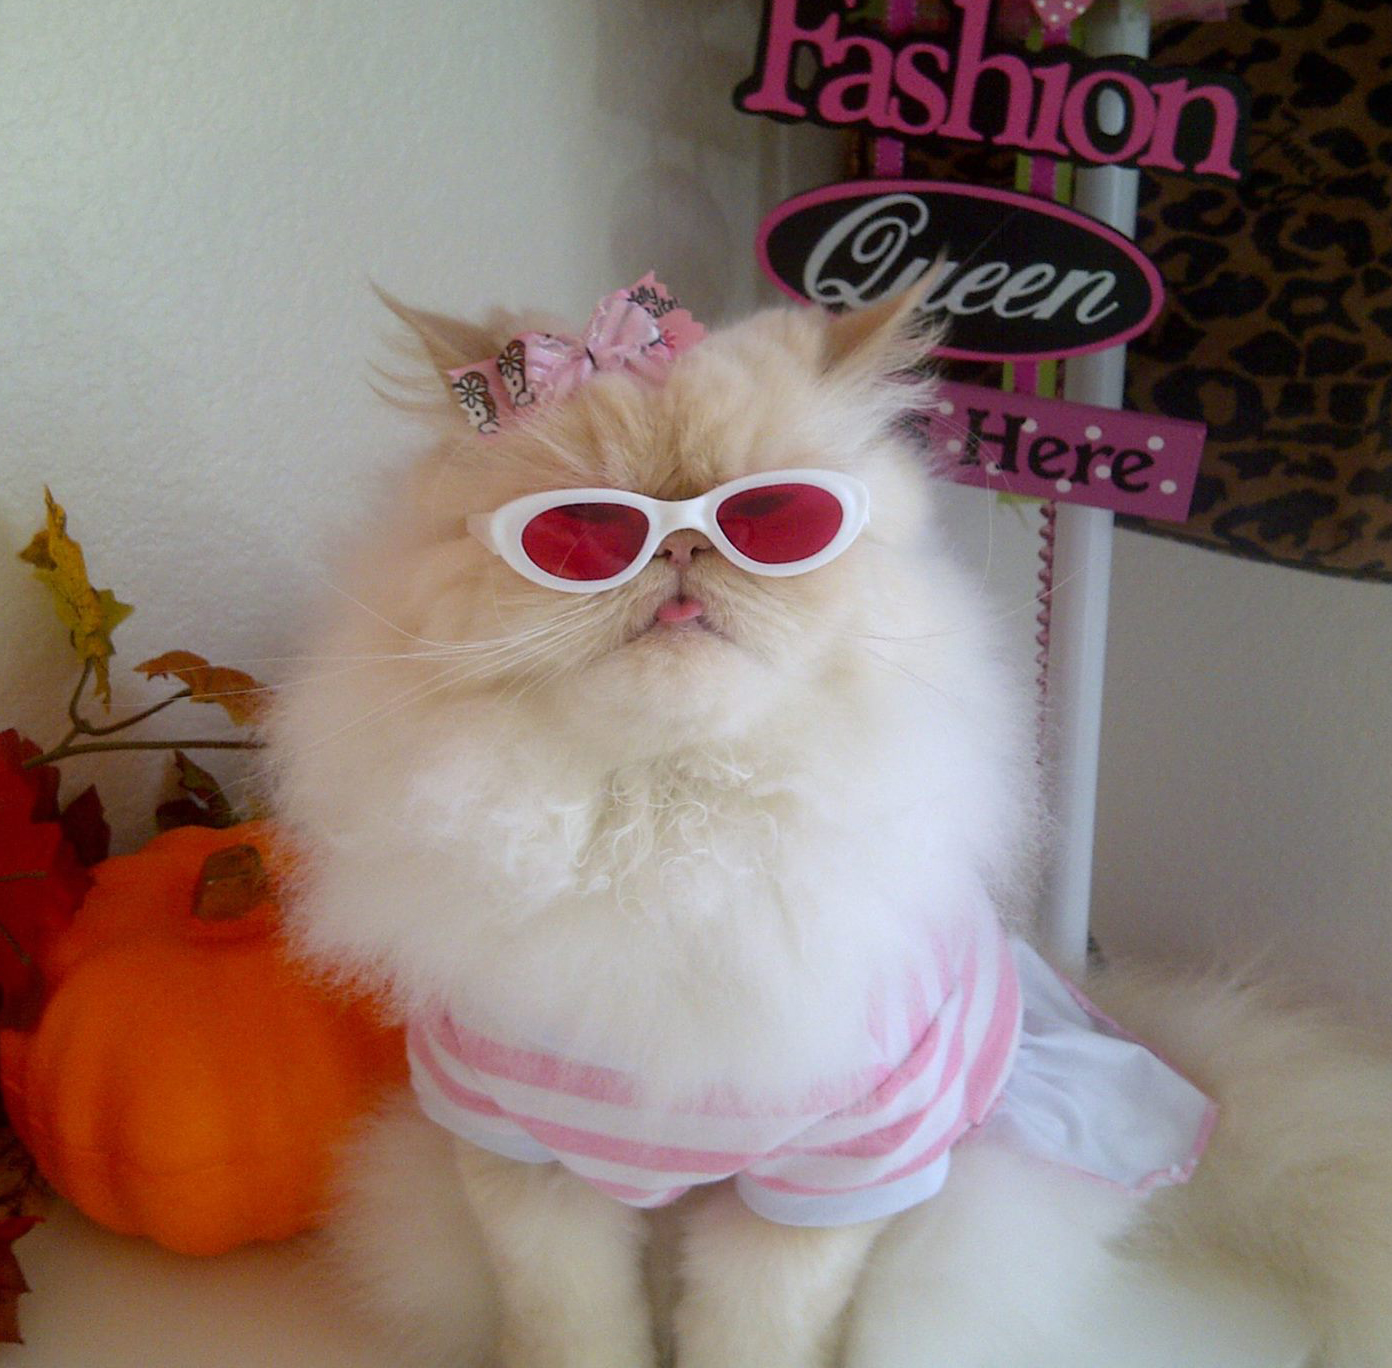 Luna, The Fashion Diva